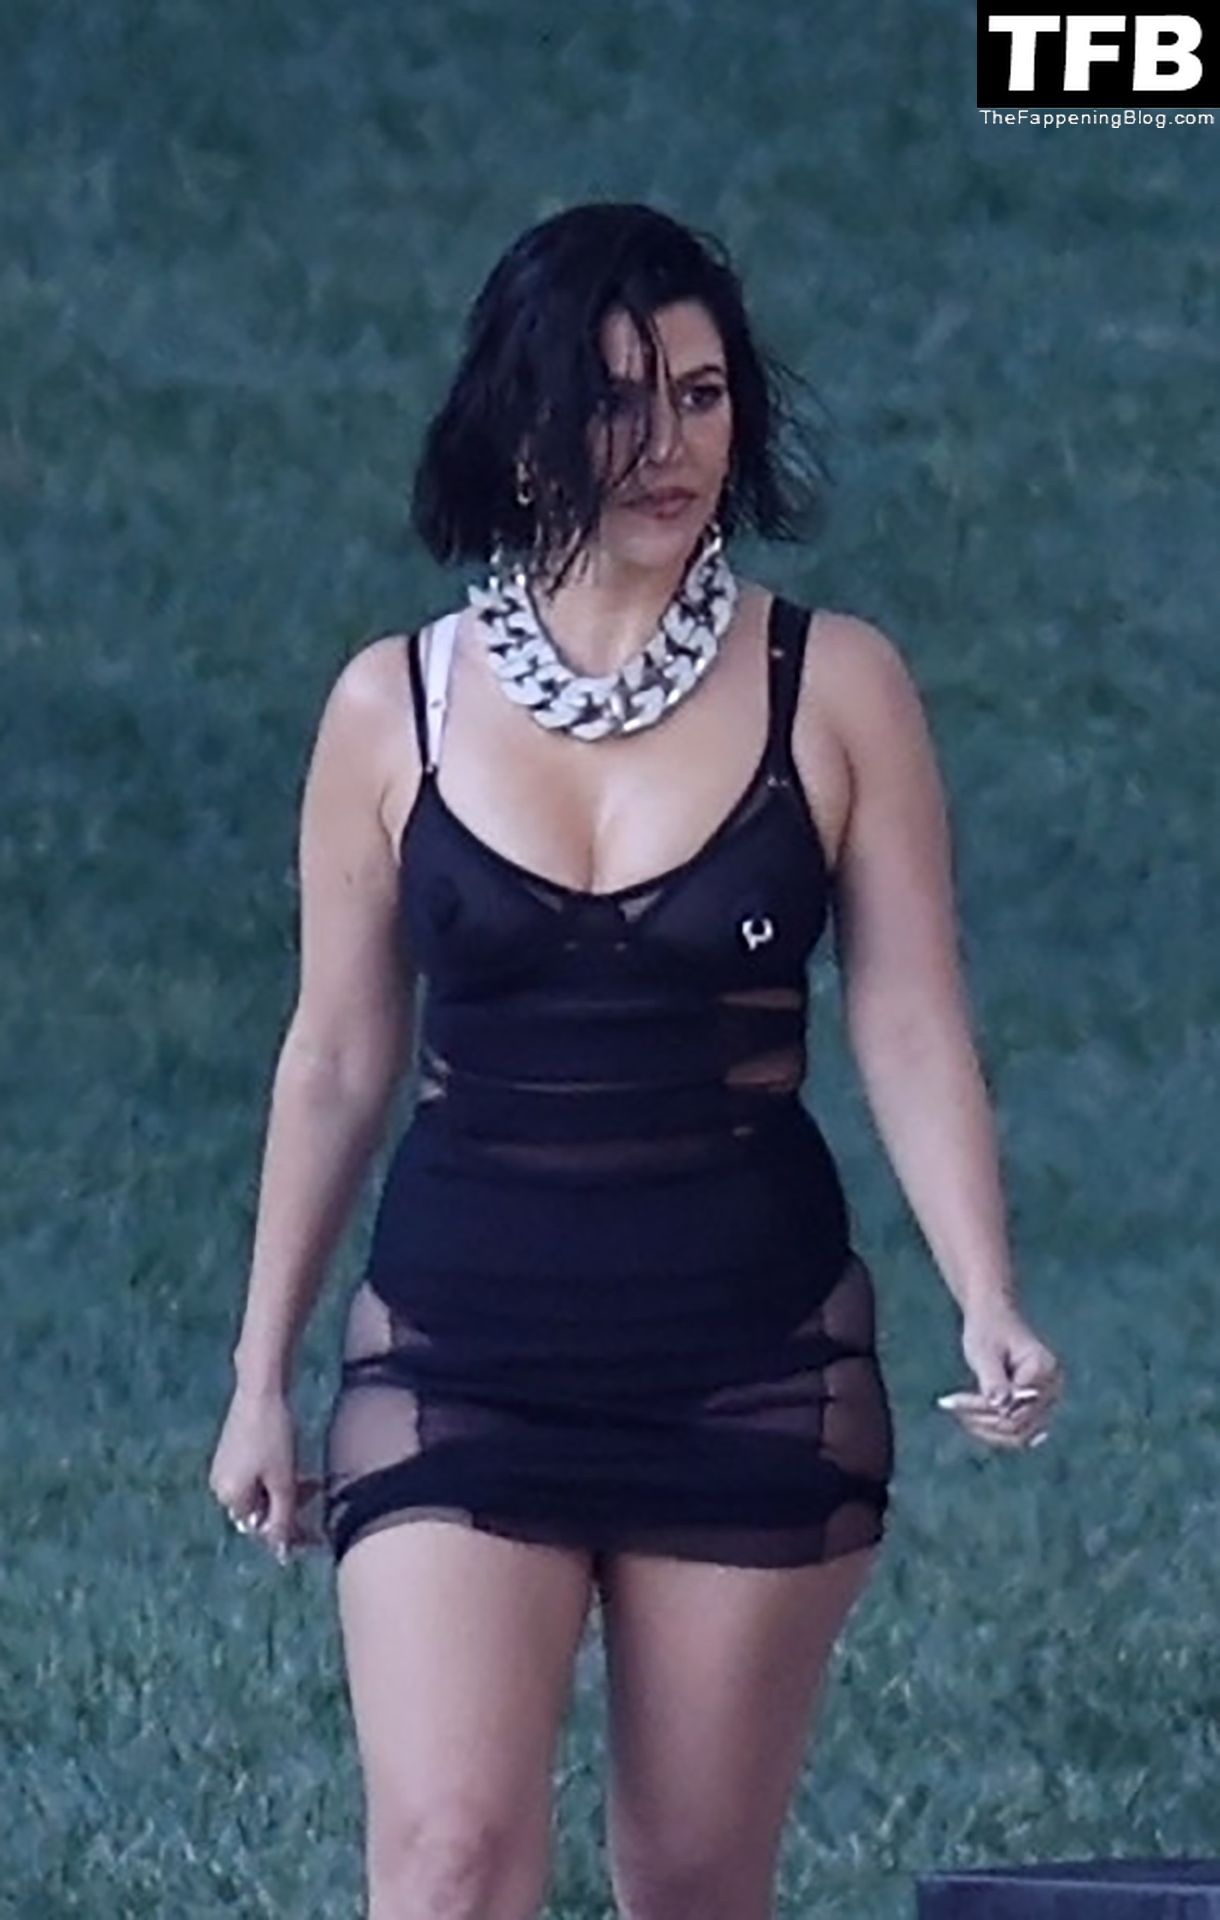 Kourtney-Kardashian-Sexy-The-Fappening-Blog-3.jpg